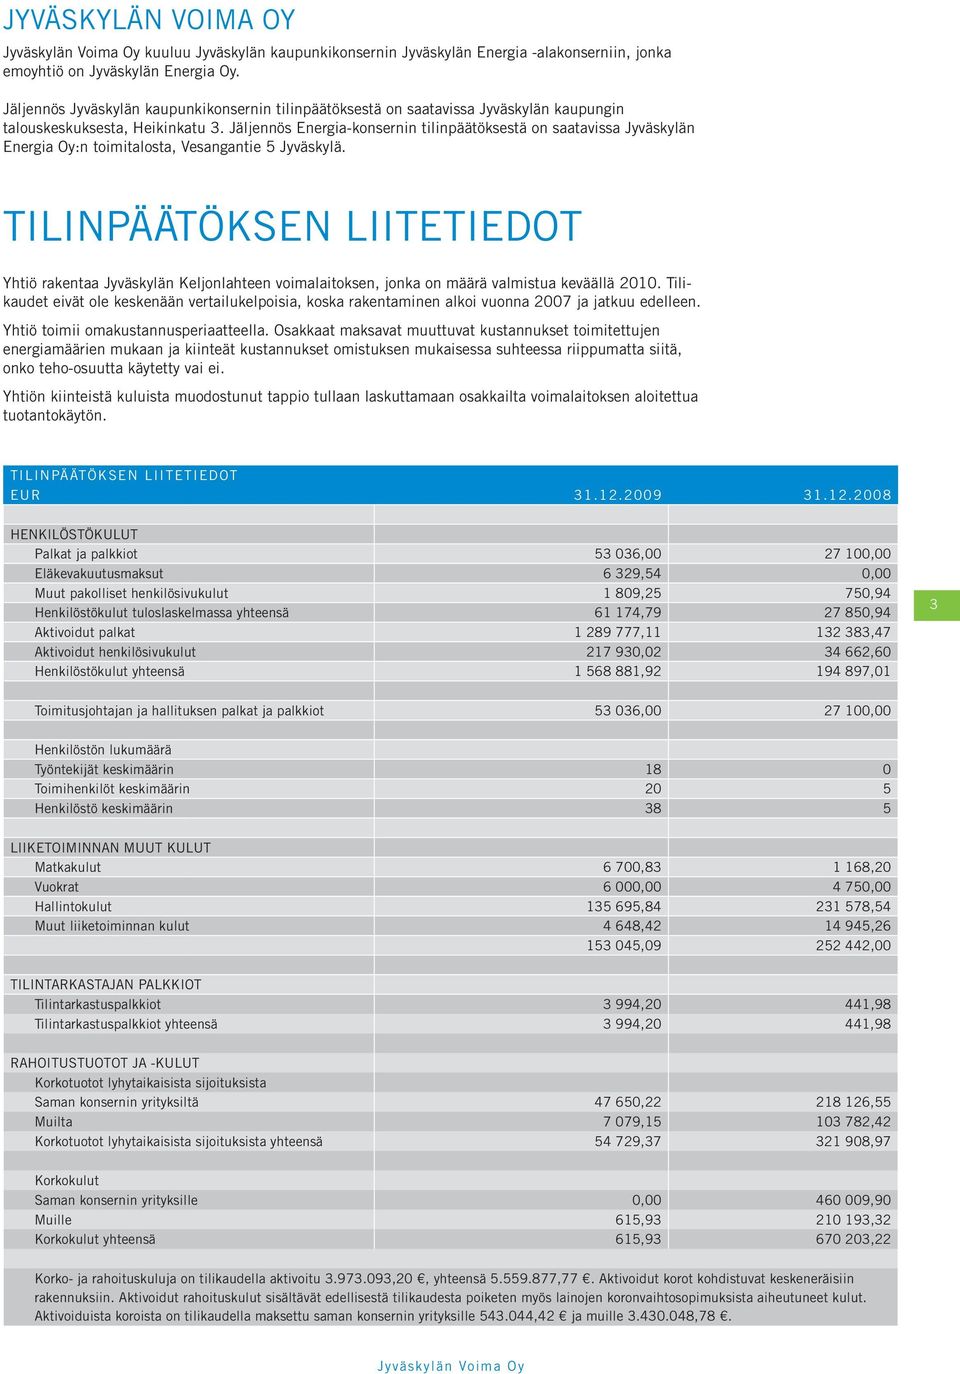 Jäljennös Energia-konsernin tilinpäätöksestä on saatavissa Jyväskylän Energia Oy:n toimitalosta, Vesangantie 5 Jyväskylä.